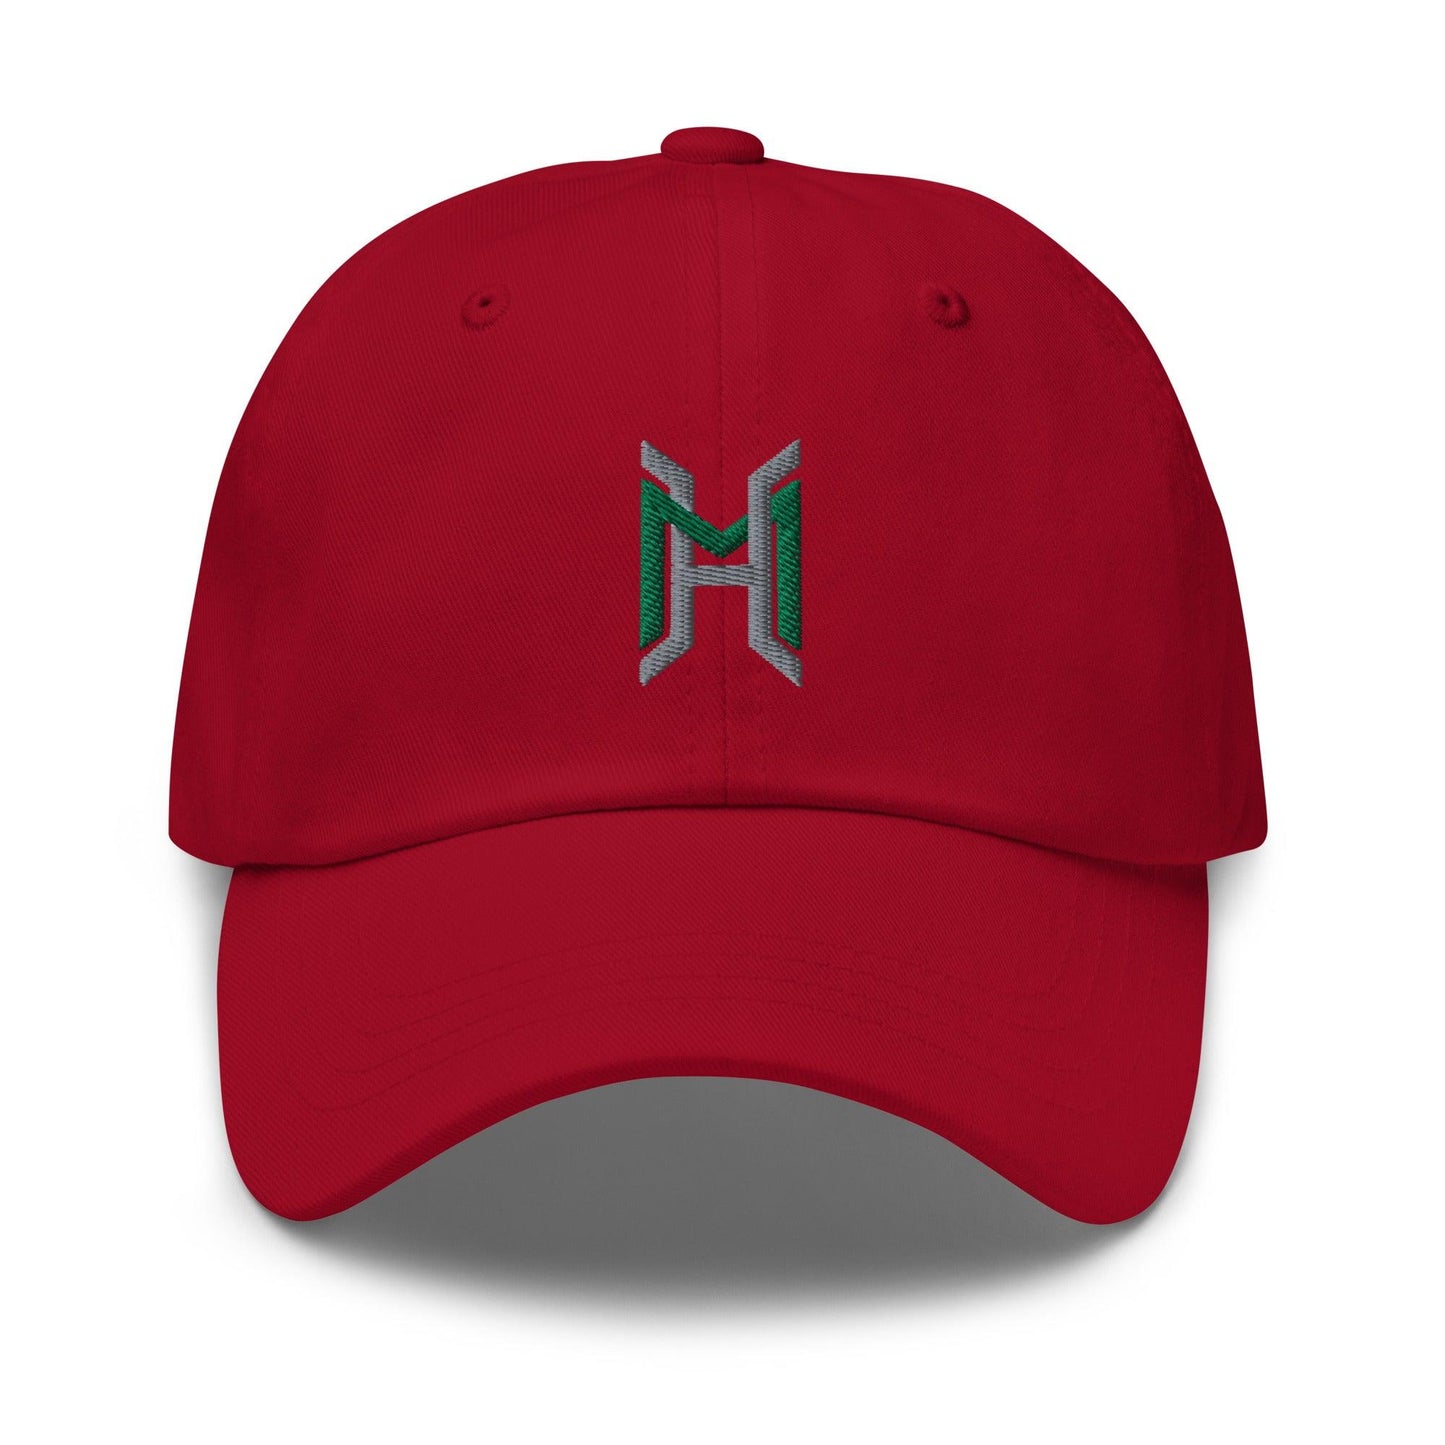 Hunter Mink "Elite" hat - Fan Arch